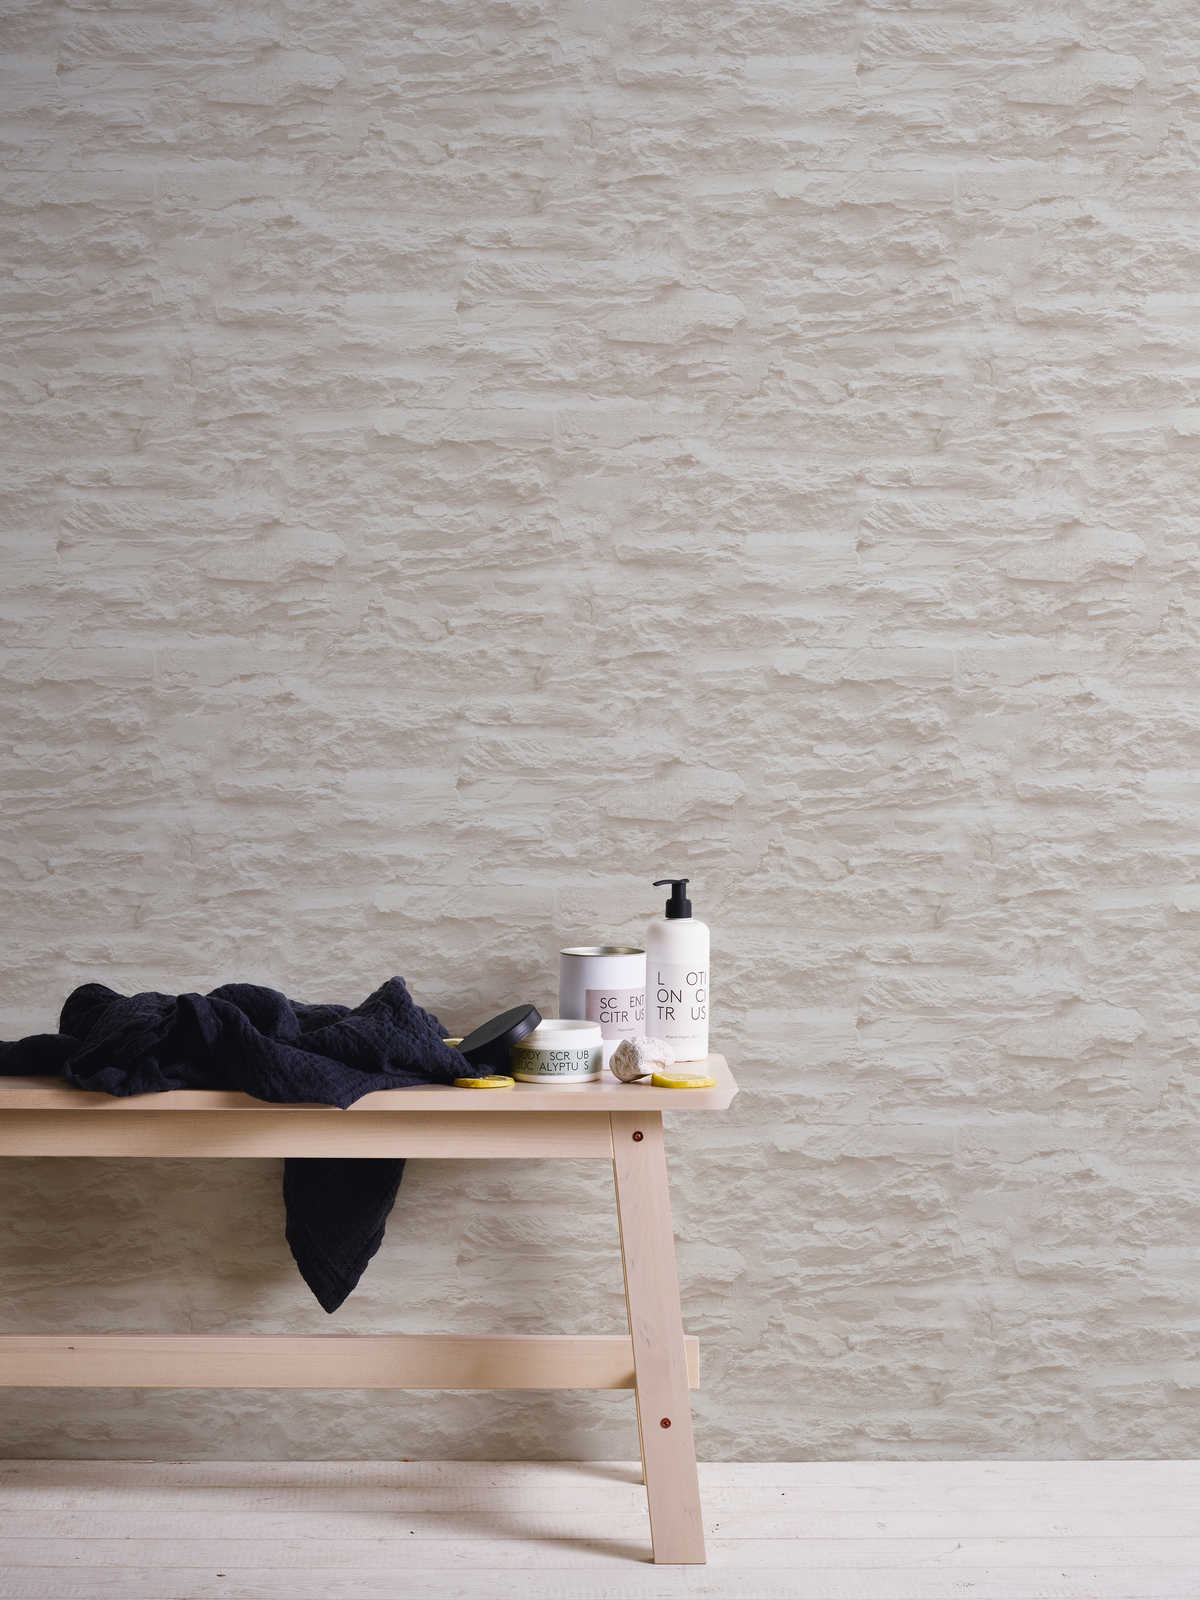             Papel pintado autoadhesivo | óptica de pared con piedra natural y yeso - crema, blanco
        